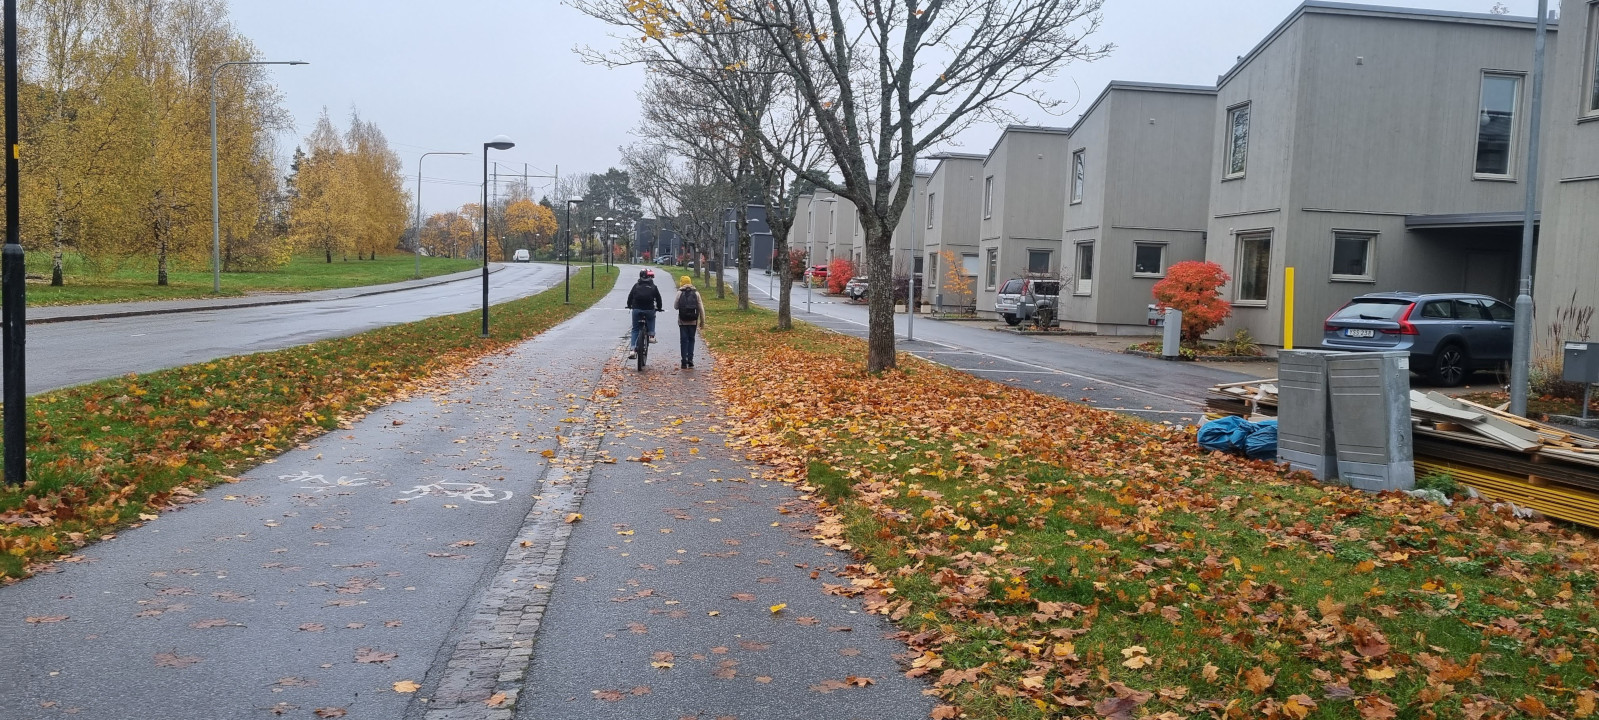 Uma criança na bicleta andando ao lado do amigo, à pé, passando pelo caminho com folhas no chão.